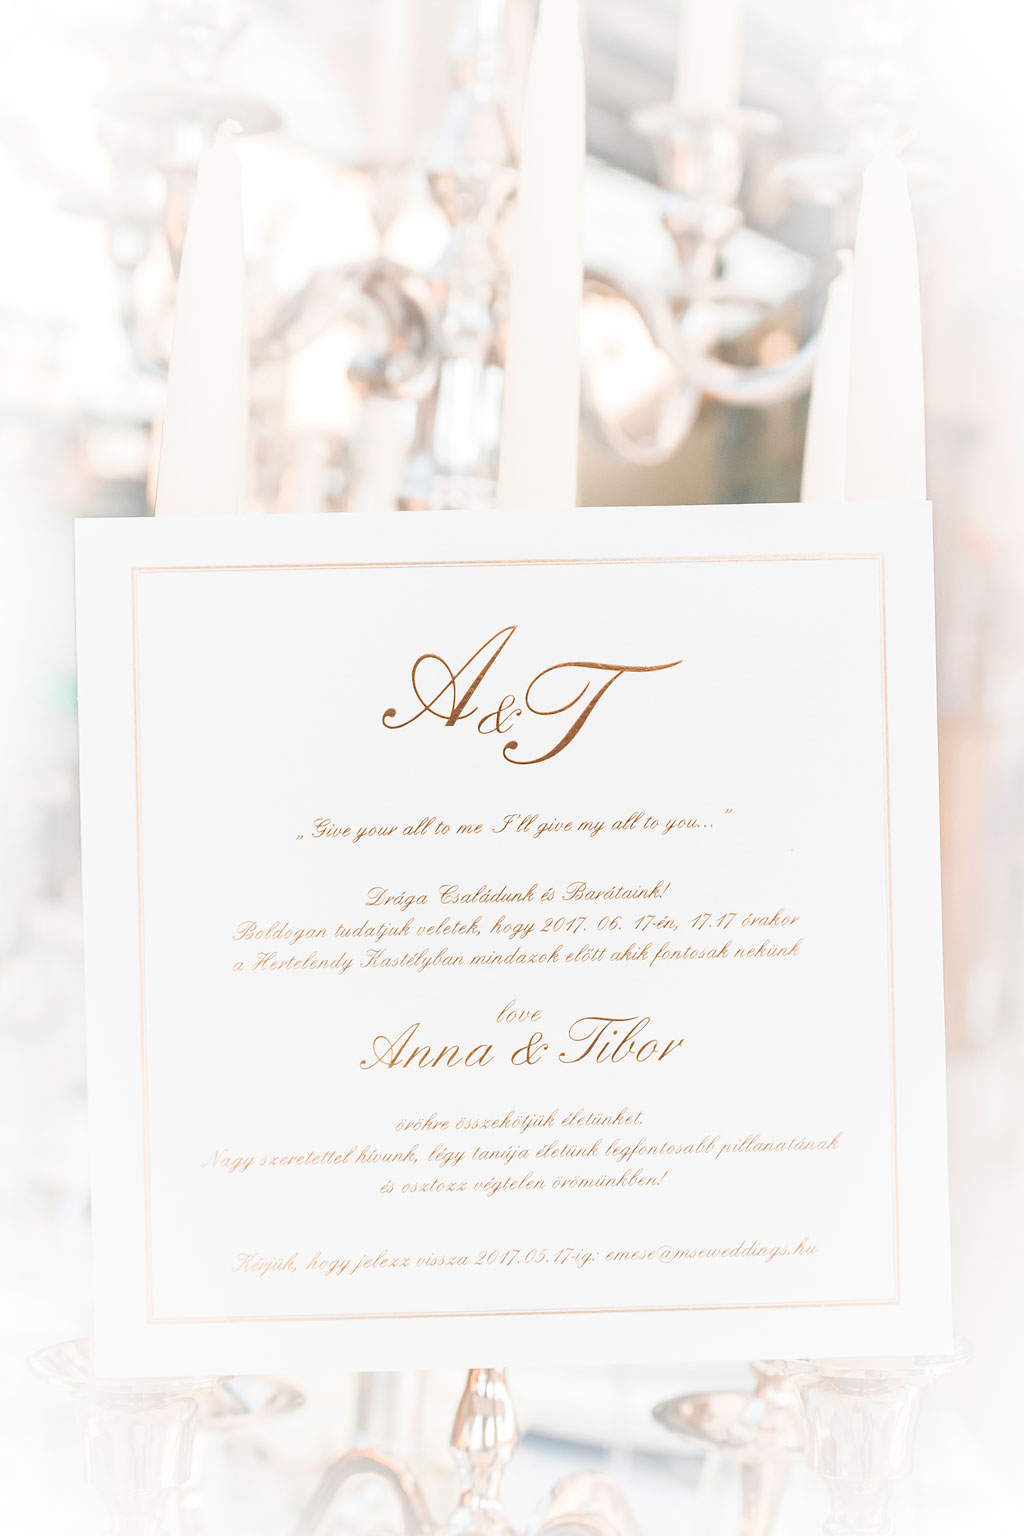 egyedi rendelésre készített, prémium minőségű esküvői meghívó aranyosan csillogó fehér papíron, arany fólianyomással